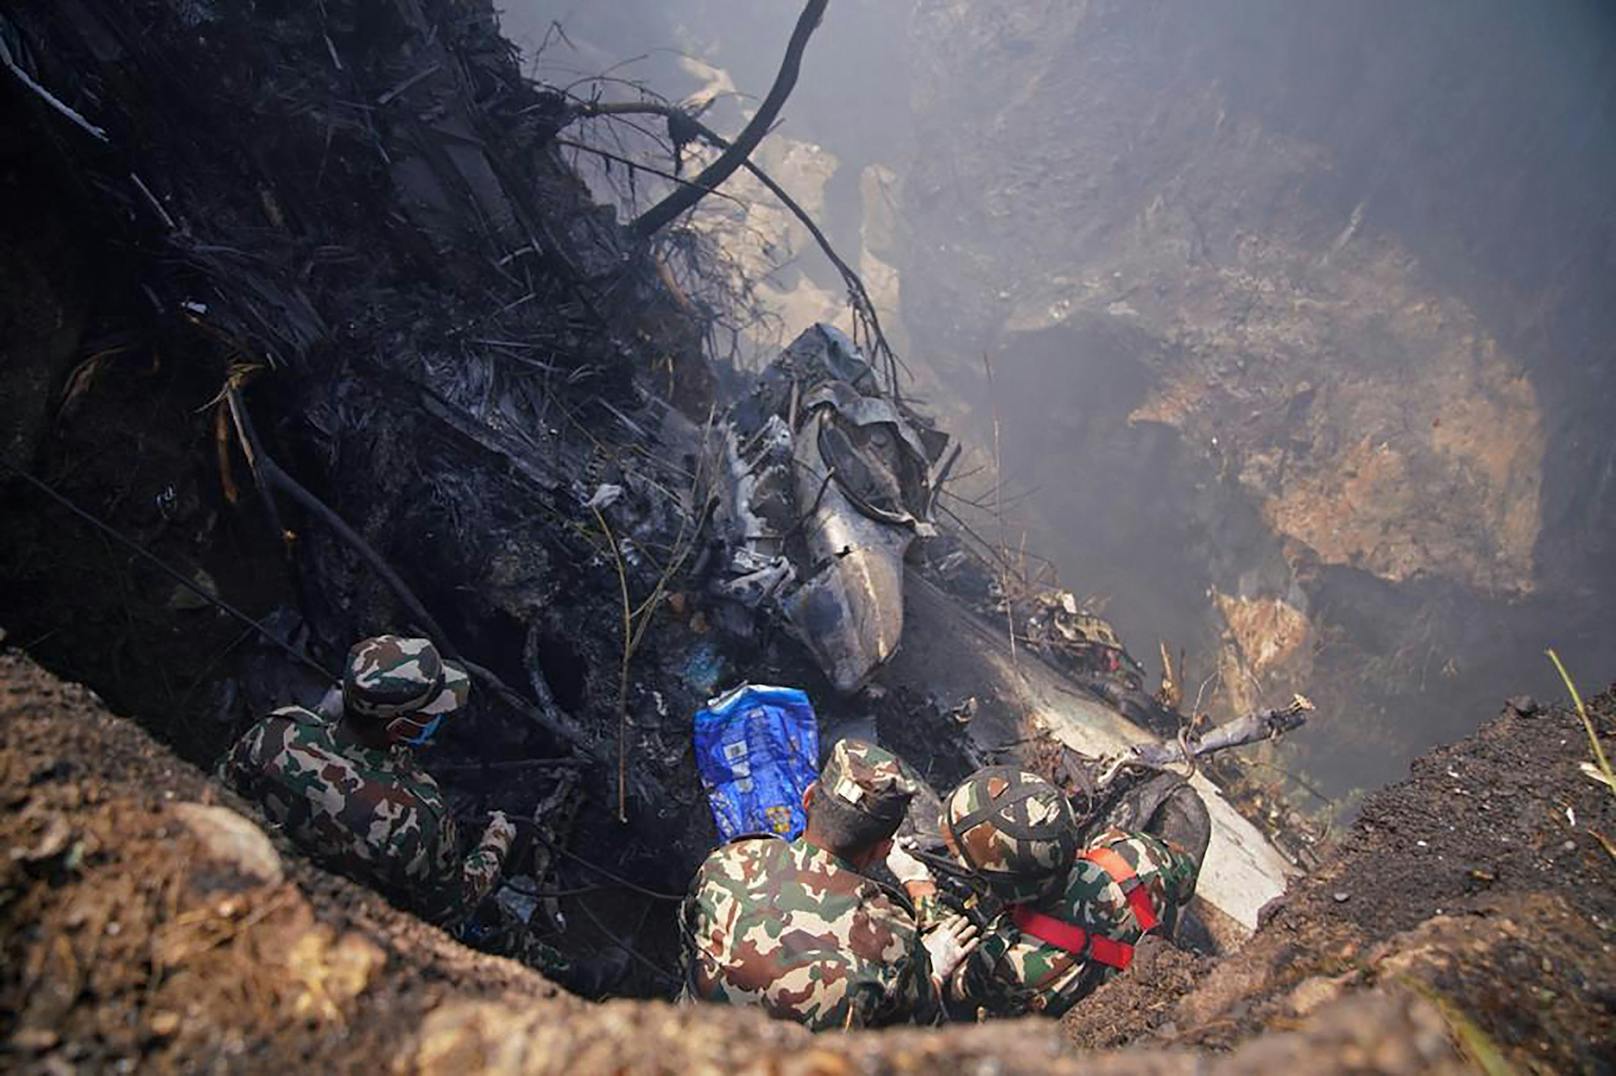 Beim Landeanflug ist die Maschine abgestürzt. Mindestens 68 Personen kamen ums Leben.